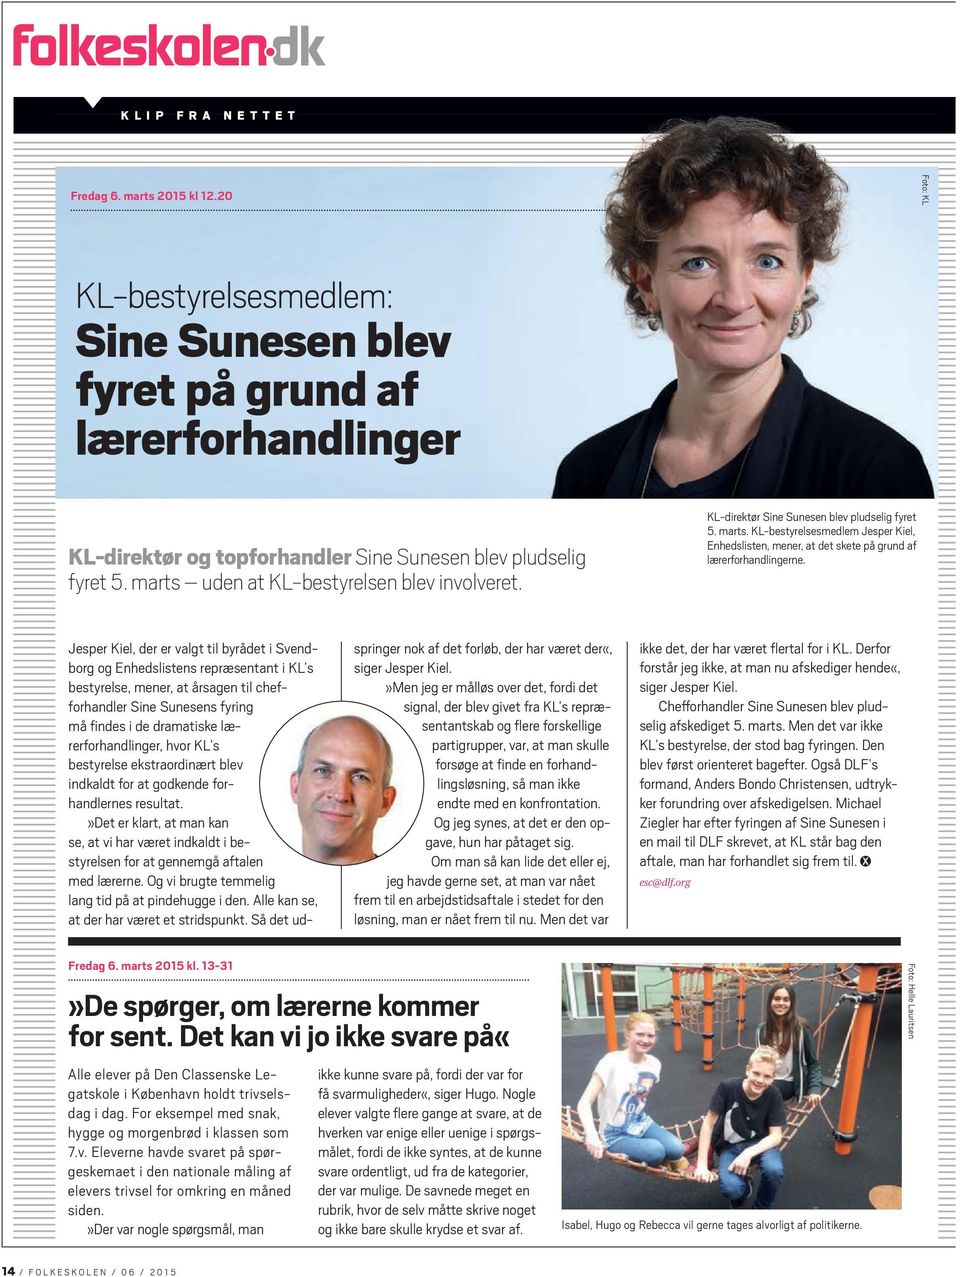 KL-direktør Sine Sunesen blev pludselig fyret 5. marts. KL-bestyrelsesmedlem Jesper Kiel, Enhedslisten, mener, at det skete på grund af lærerforhandlingerne.